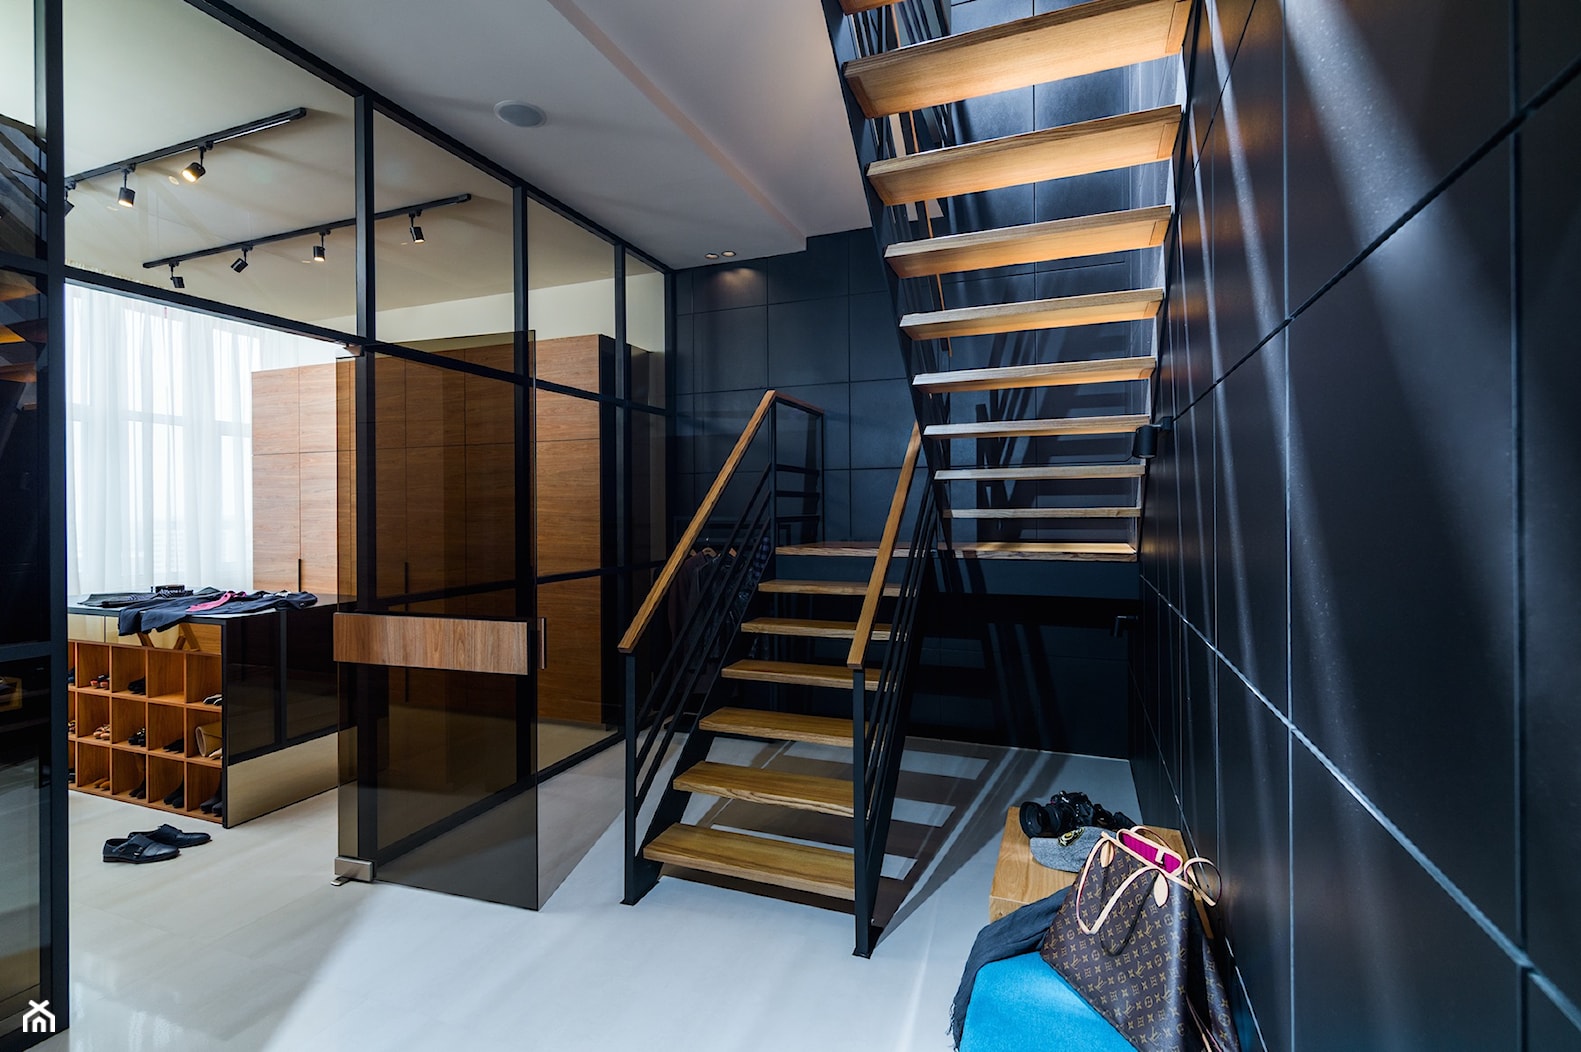 Duplex Penthouse - Schody, styl industrialny - zdjęcie od RB ARCHITECTS - Homebook